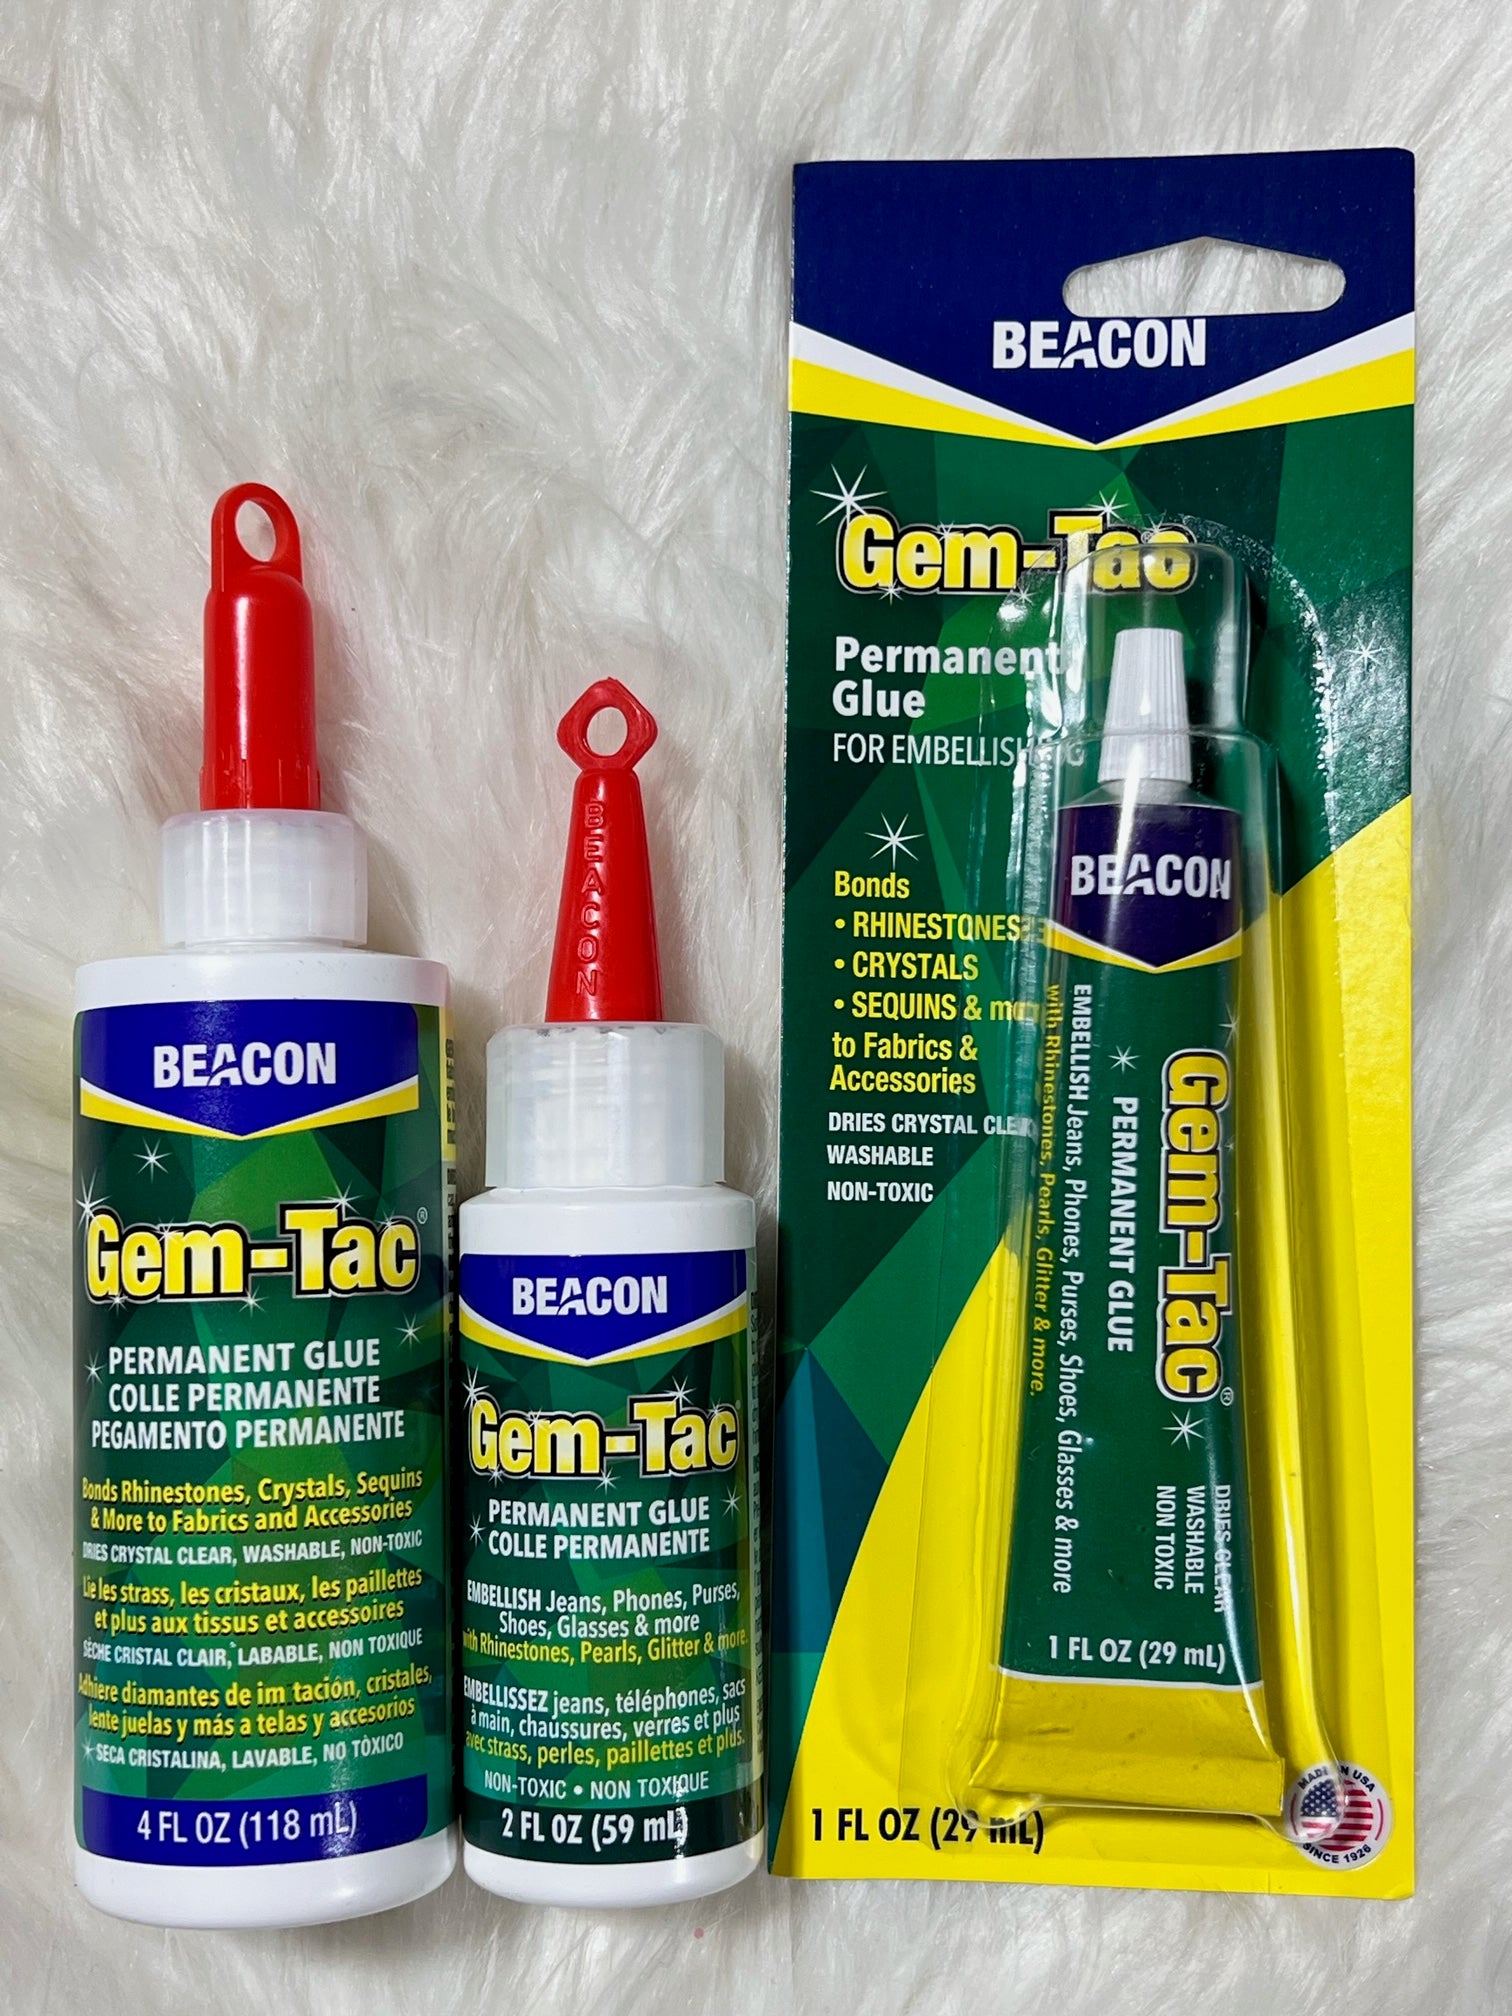 Gem-Tac Permanent Glue